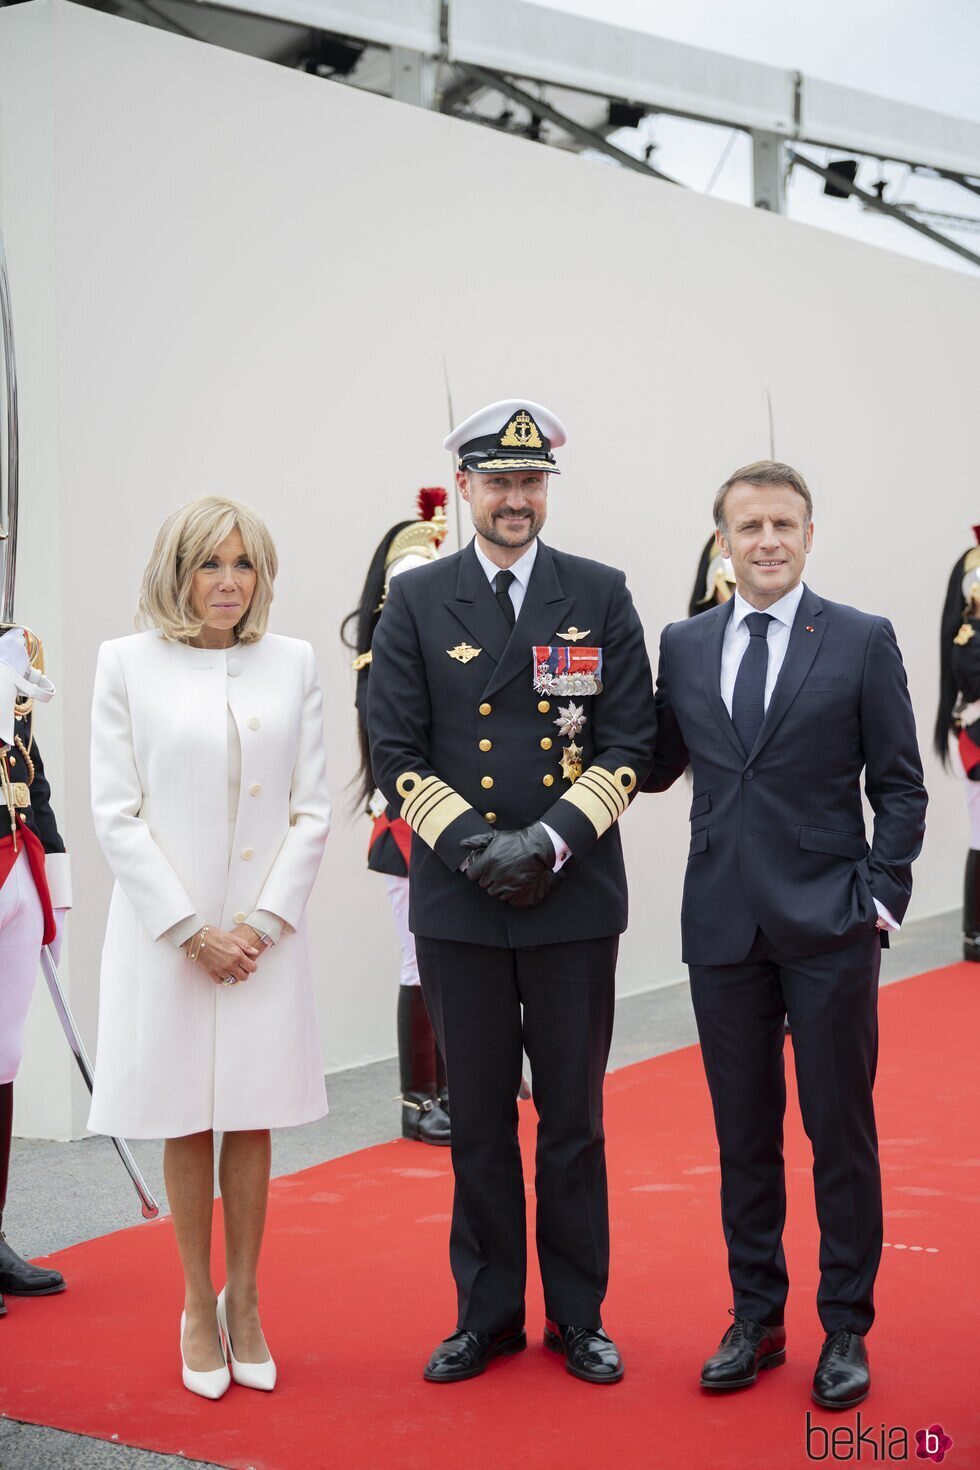 Haakon de Noruega y los Macron en el 80 aniversario del Desembarco de Normandía